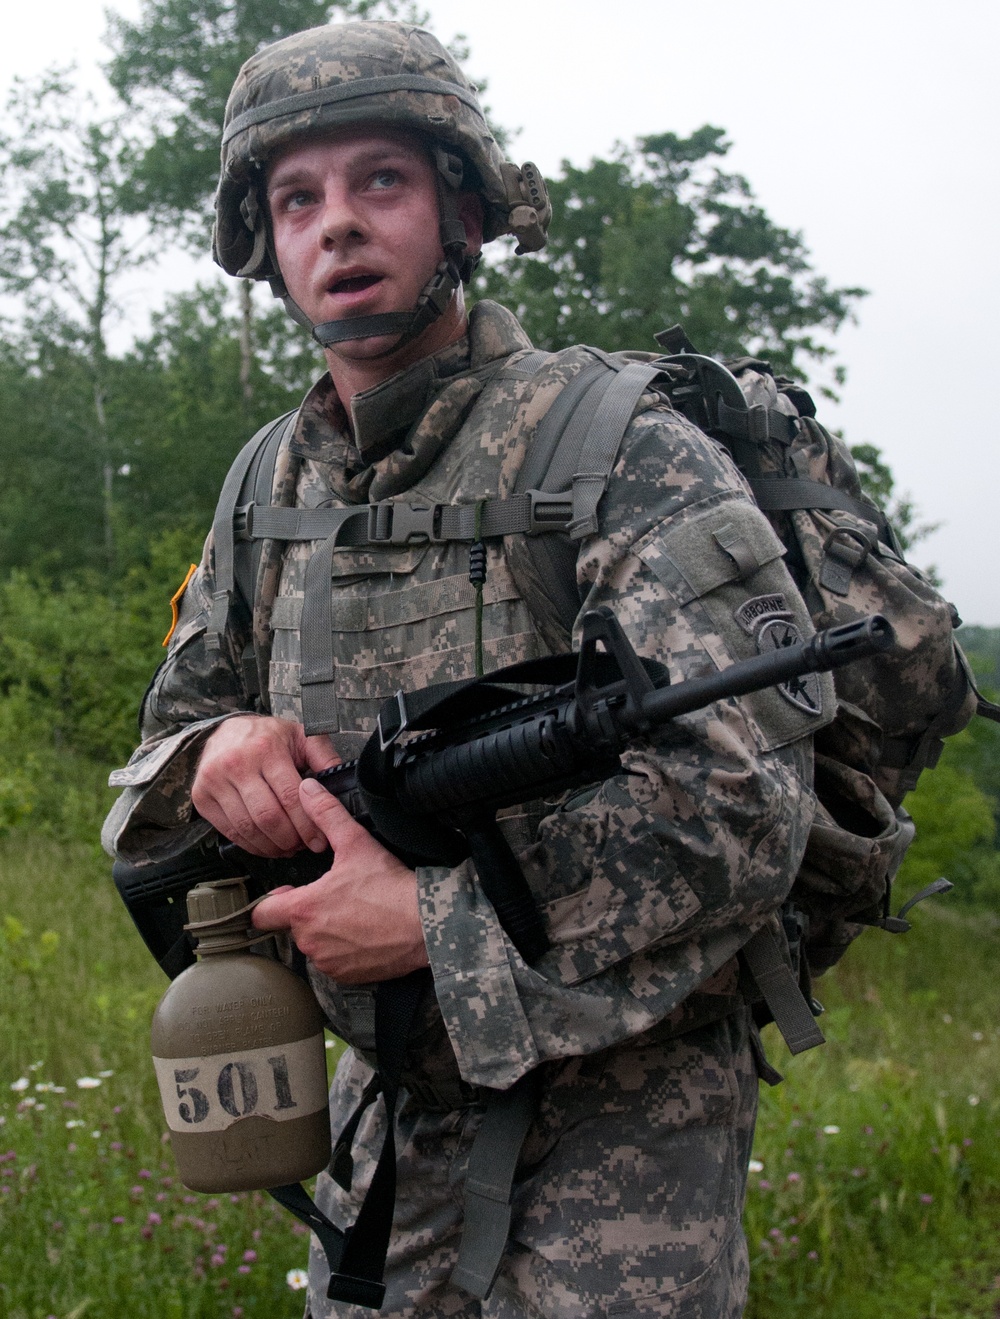 2011 Army Reserve Best Warrior